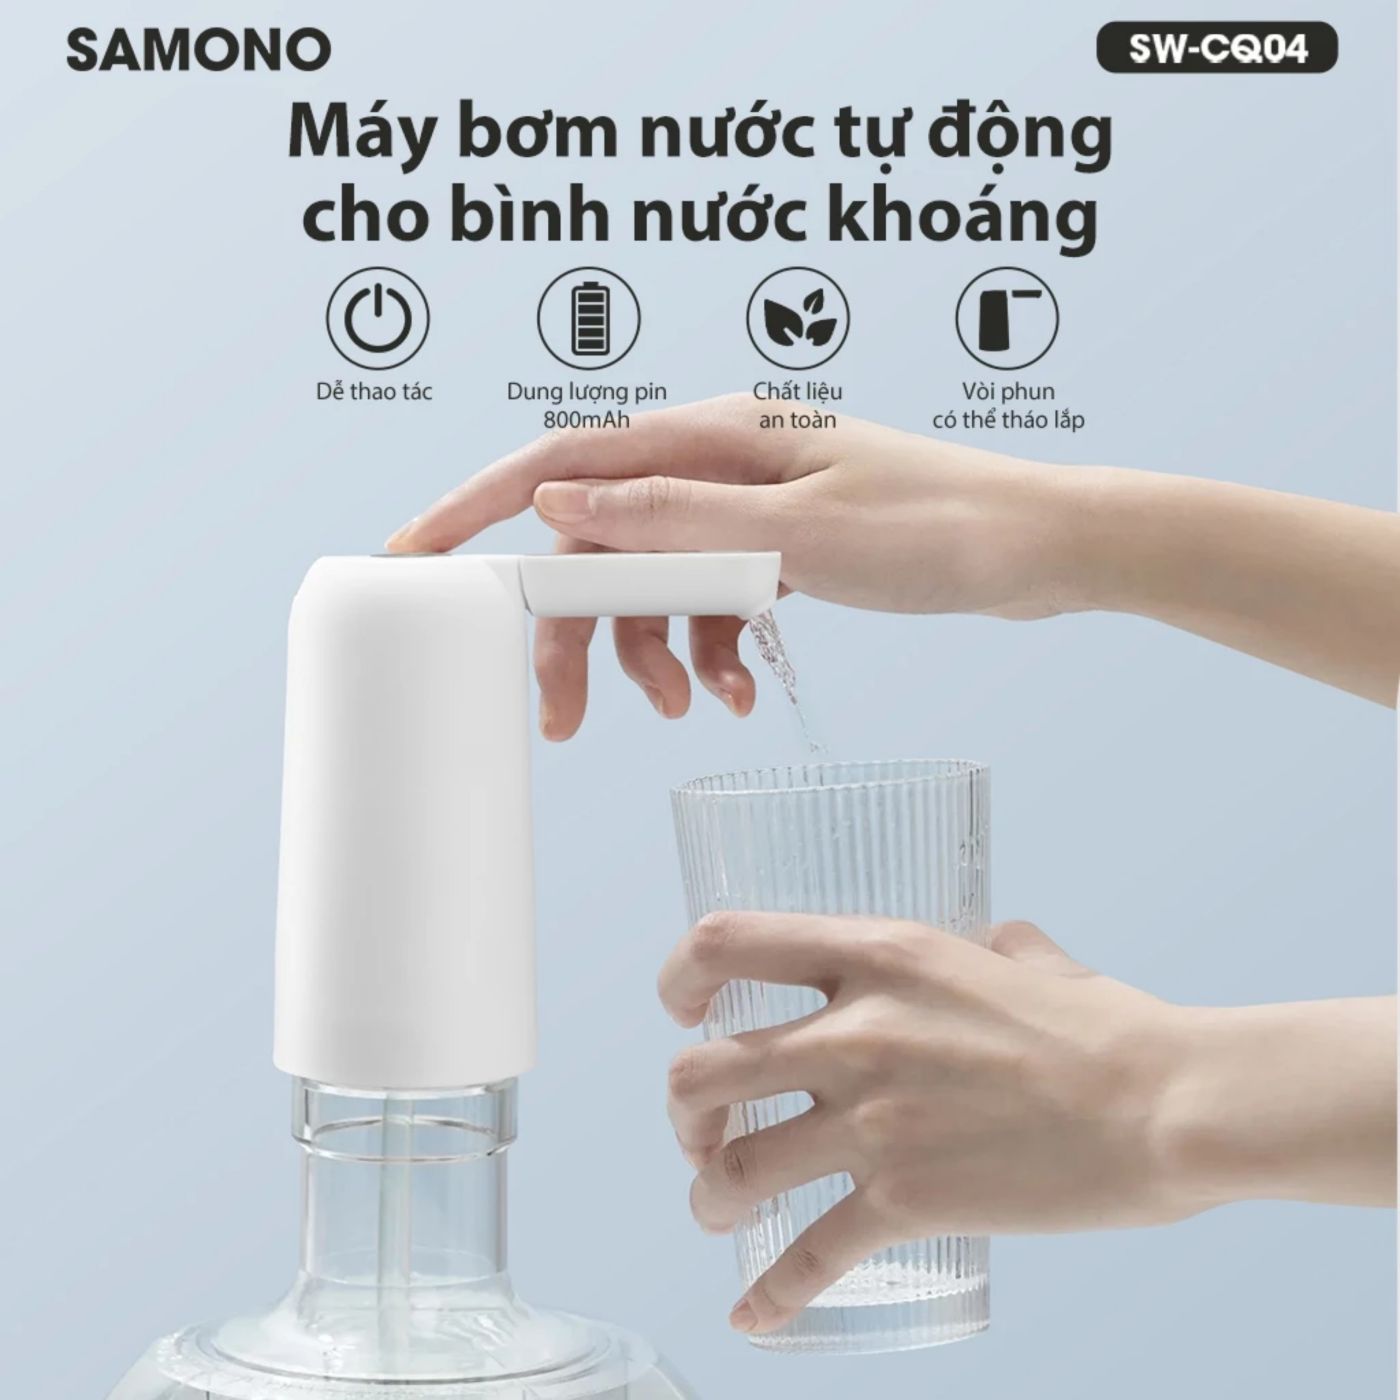 SAMONO SW-CQ04 Máy bơm nước tự động cho bình khoáng, hút tự động cho bình Máy bơm nước tự động